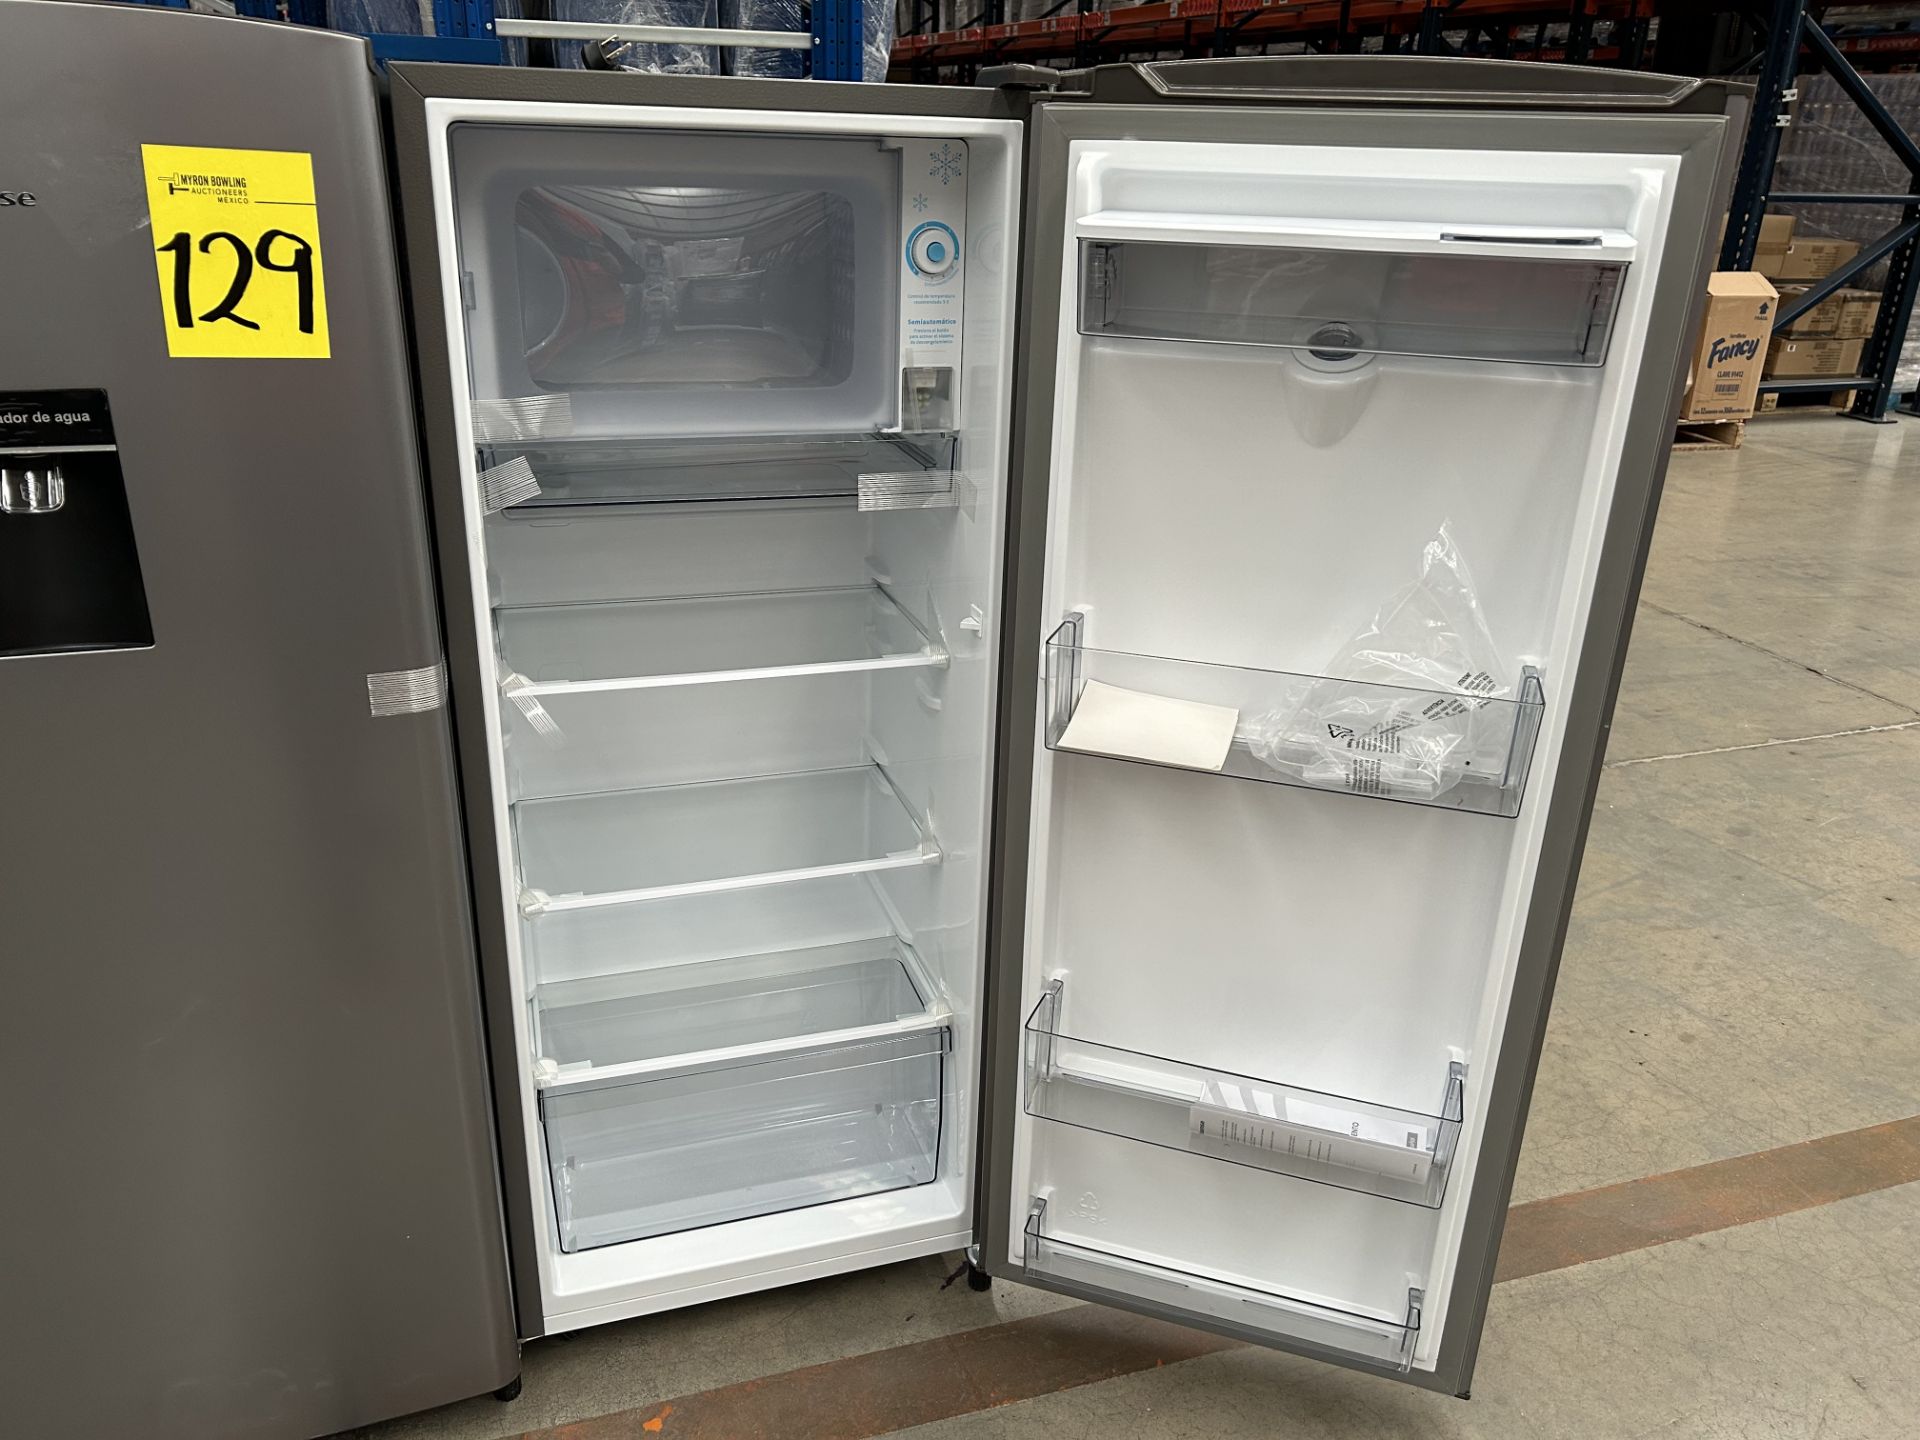 Lote de 2 refrigeradores contiene: 1 Refrigerador con dispensador de agua Marca HISENSE, Modelo RR6 - Image 5 of 7